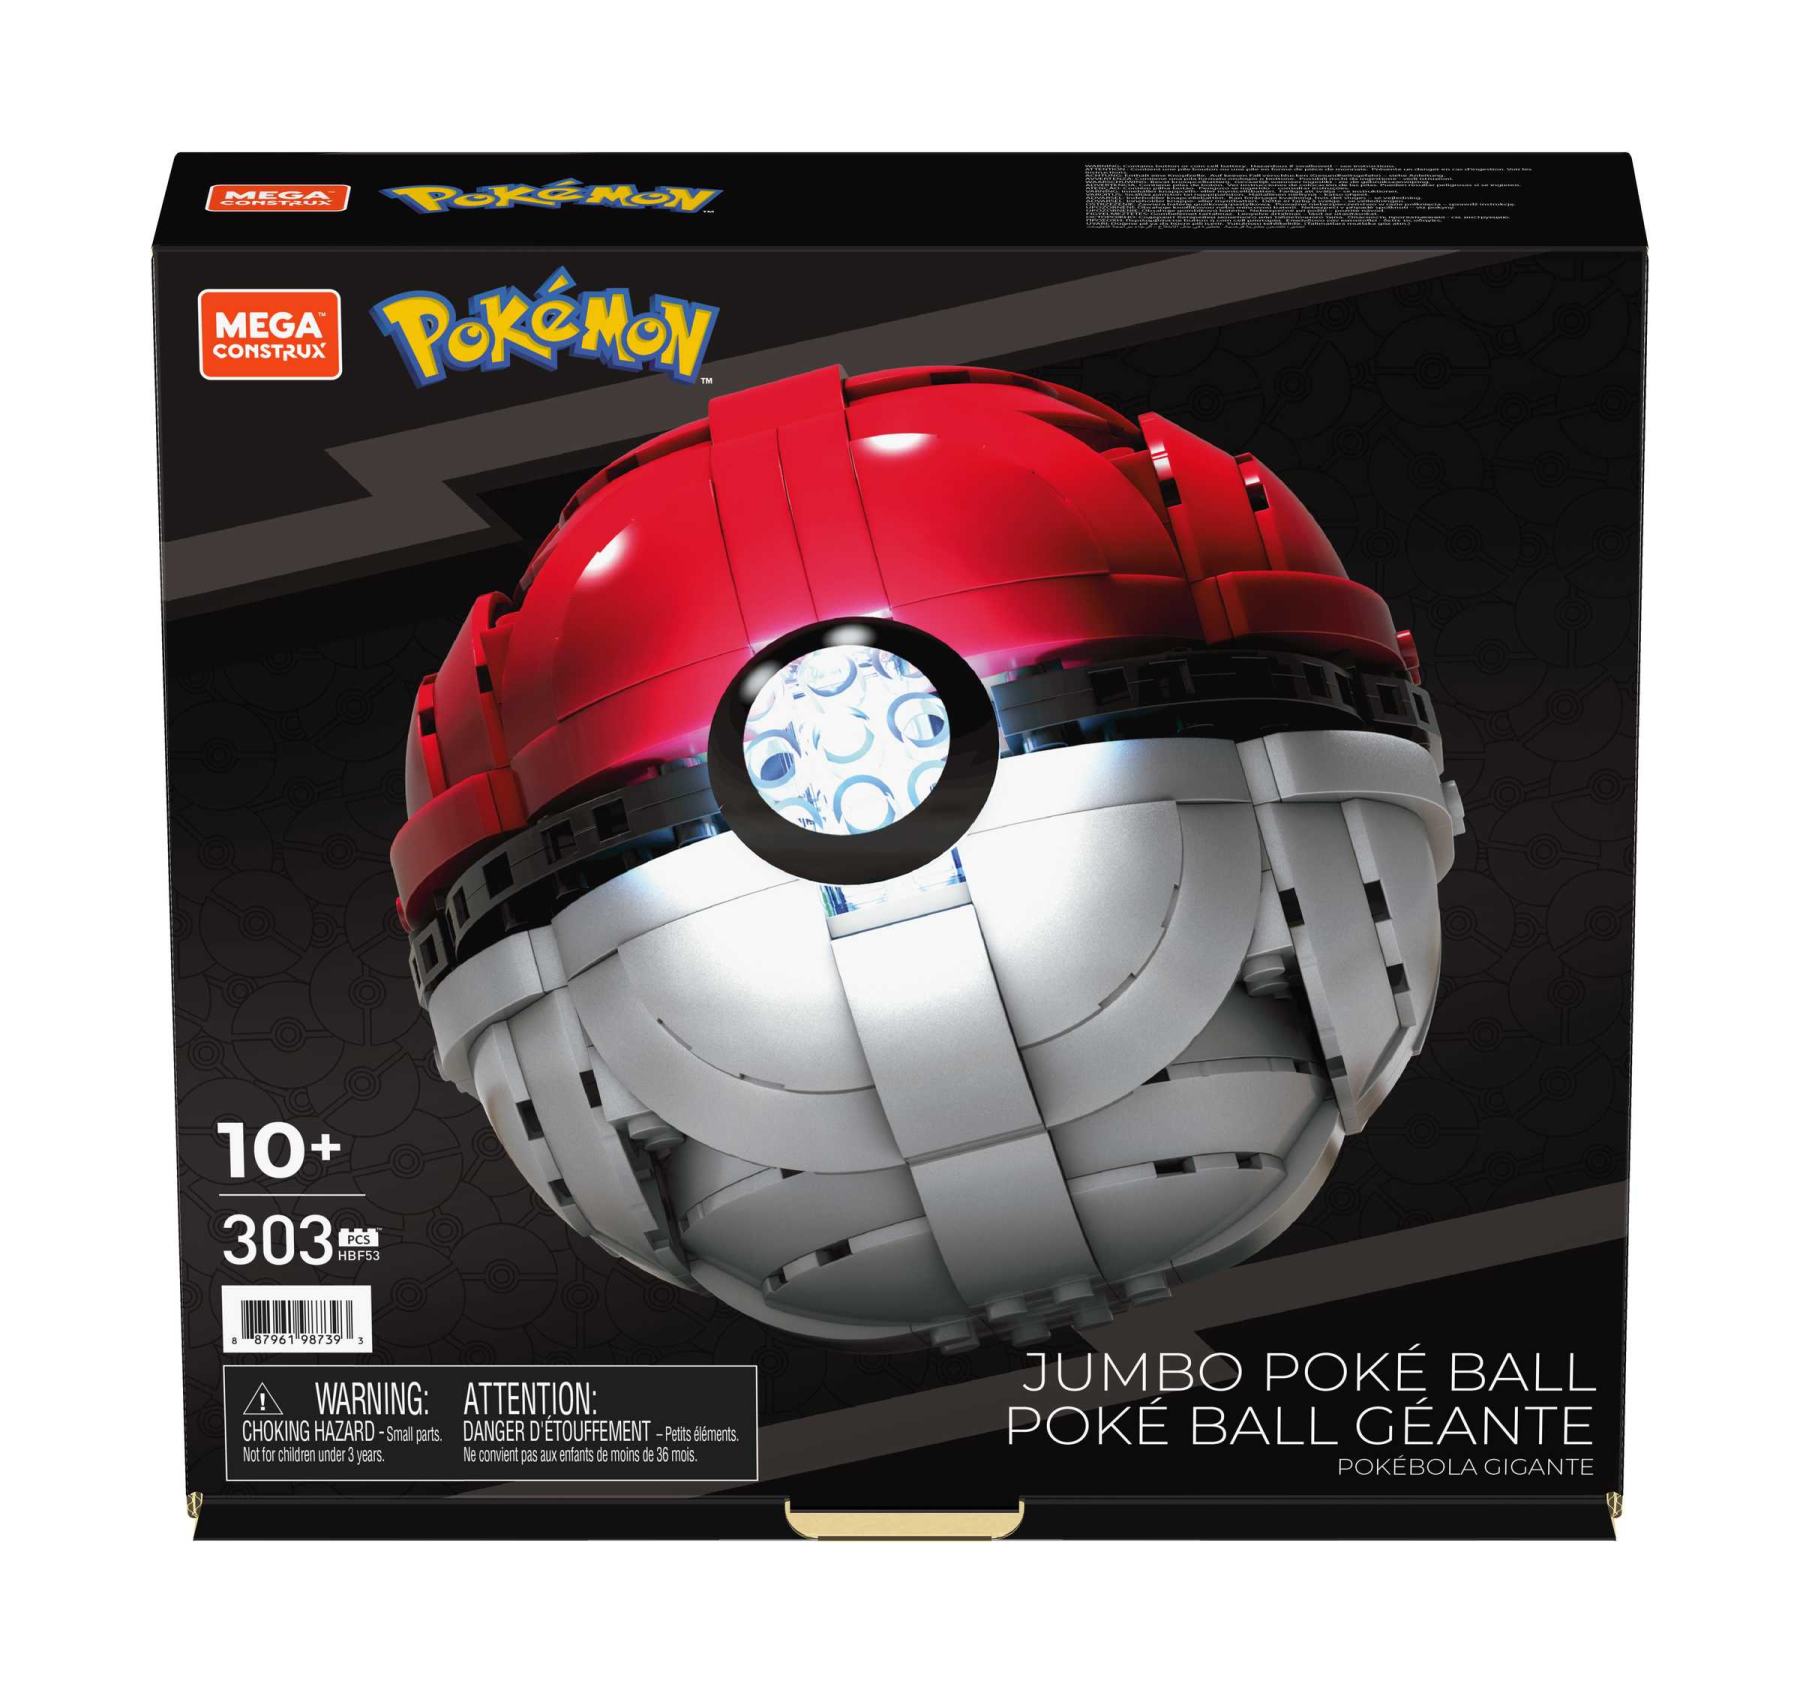 Mega construx pokémon, poké ball gigante che si illumina, da costruire interamente, giocattolo per bambini 10+ anni - POKEMON